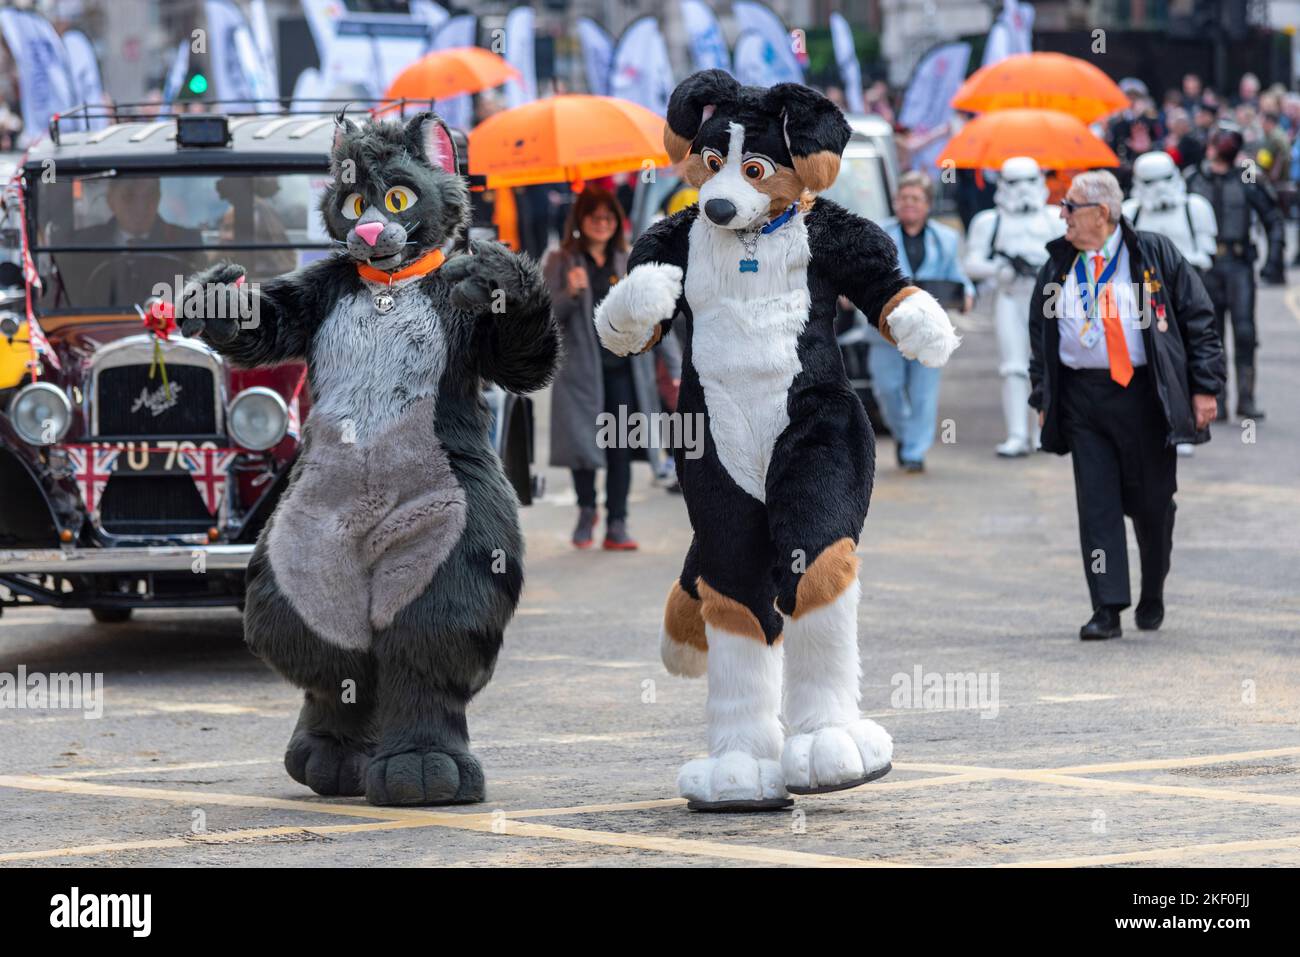 LONDON TAXI FAHRER WOHLTÄTIGKEITSORGANISATION FÜR KINDER bei der Lord Mayor's Show Parade in der City of London, Großbritannien. Hundekostüm Stockfoto